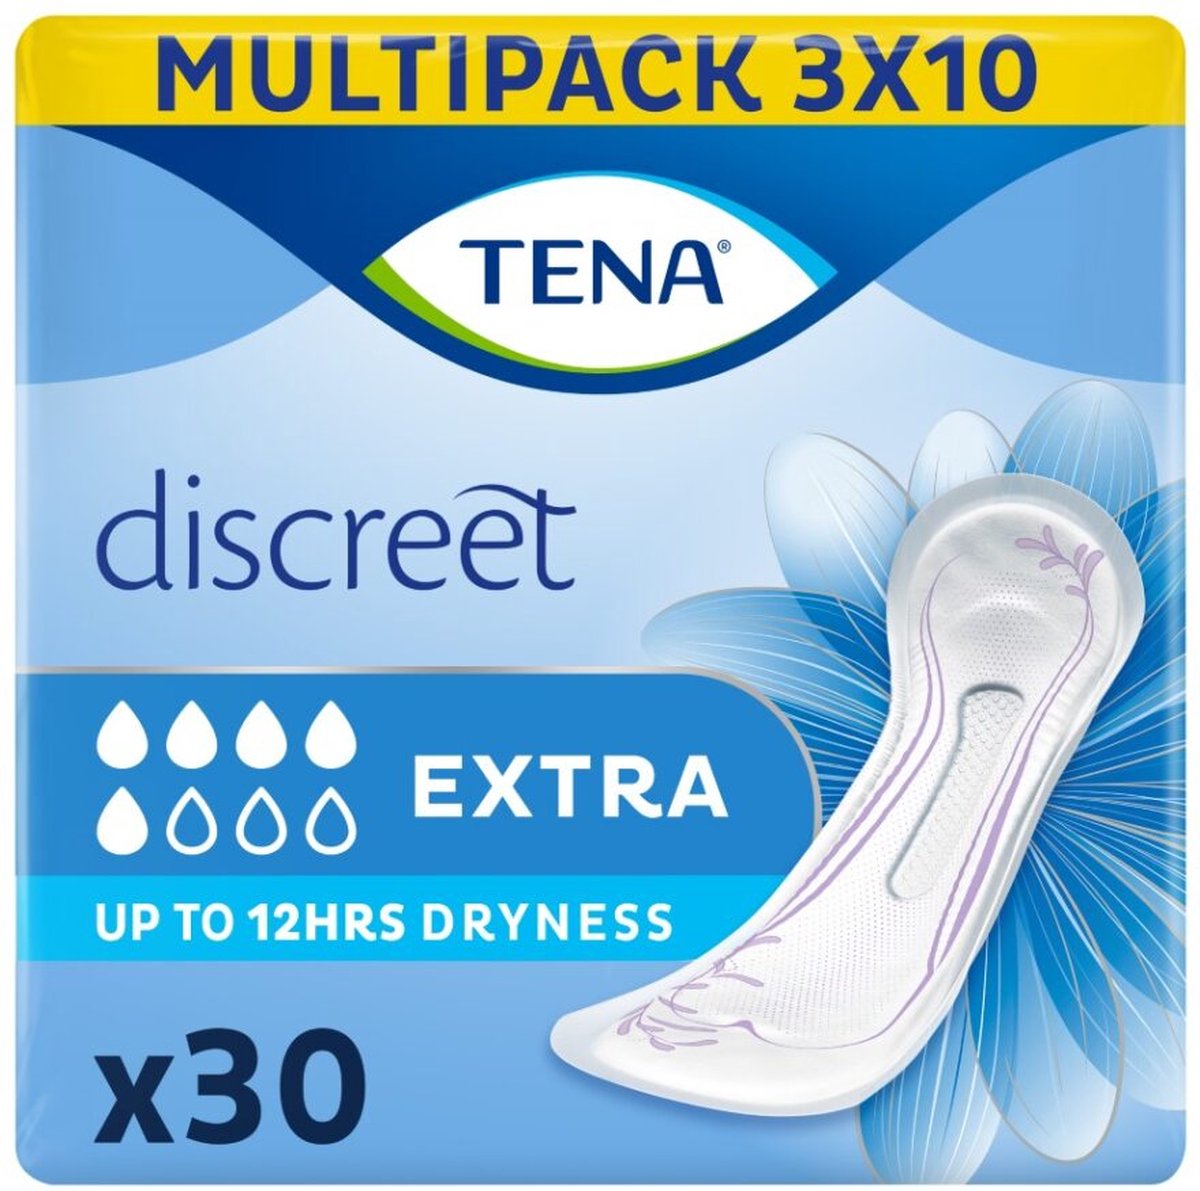 TENA Discreet Extra verbanden - 3 x 10 stuks - voor urineverlies - TENA